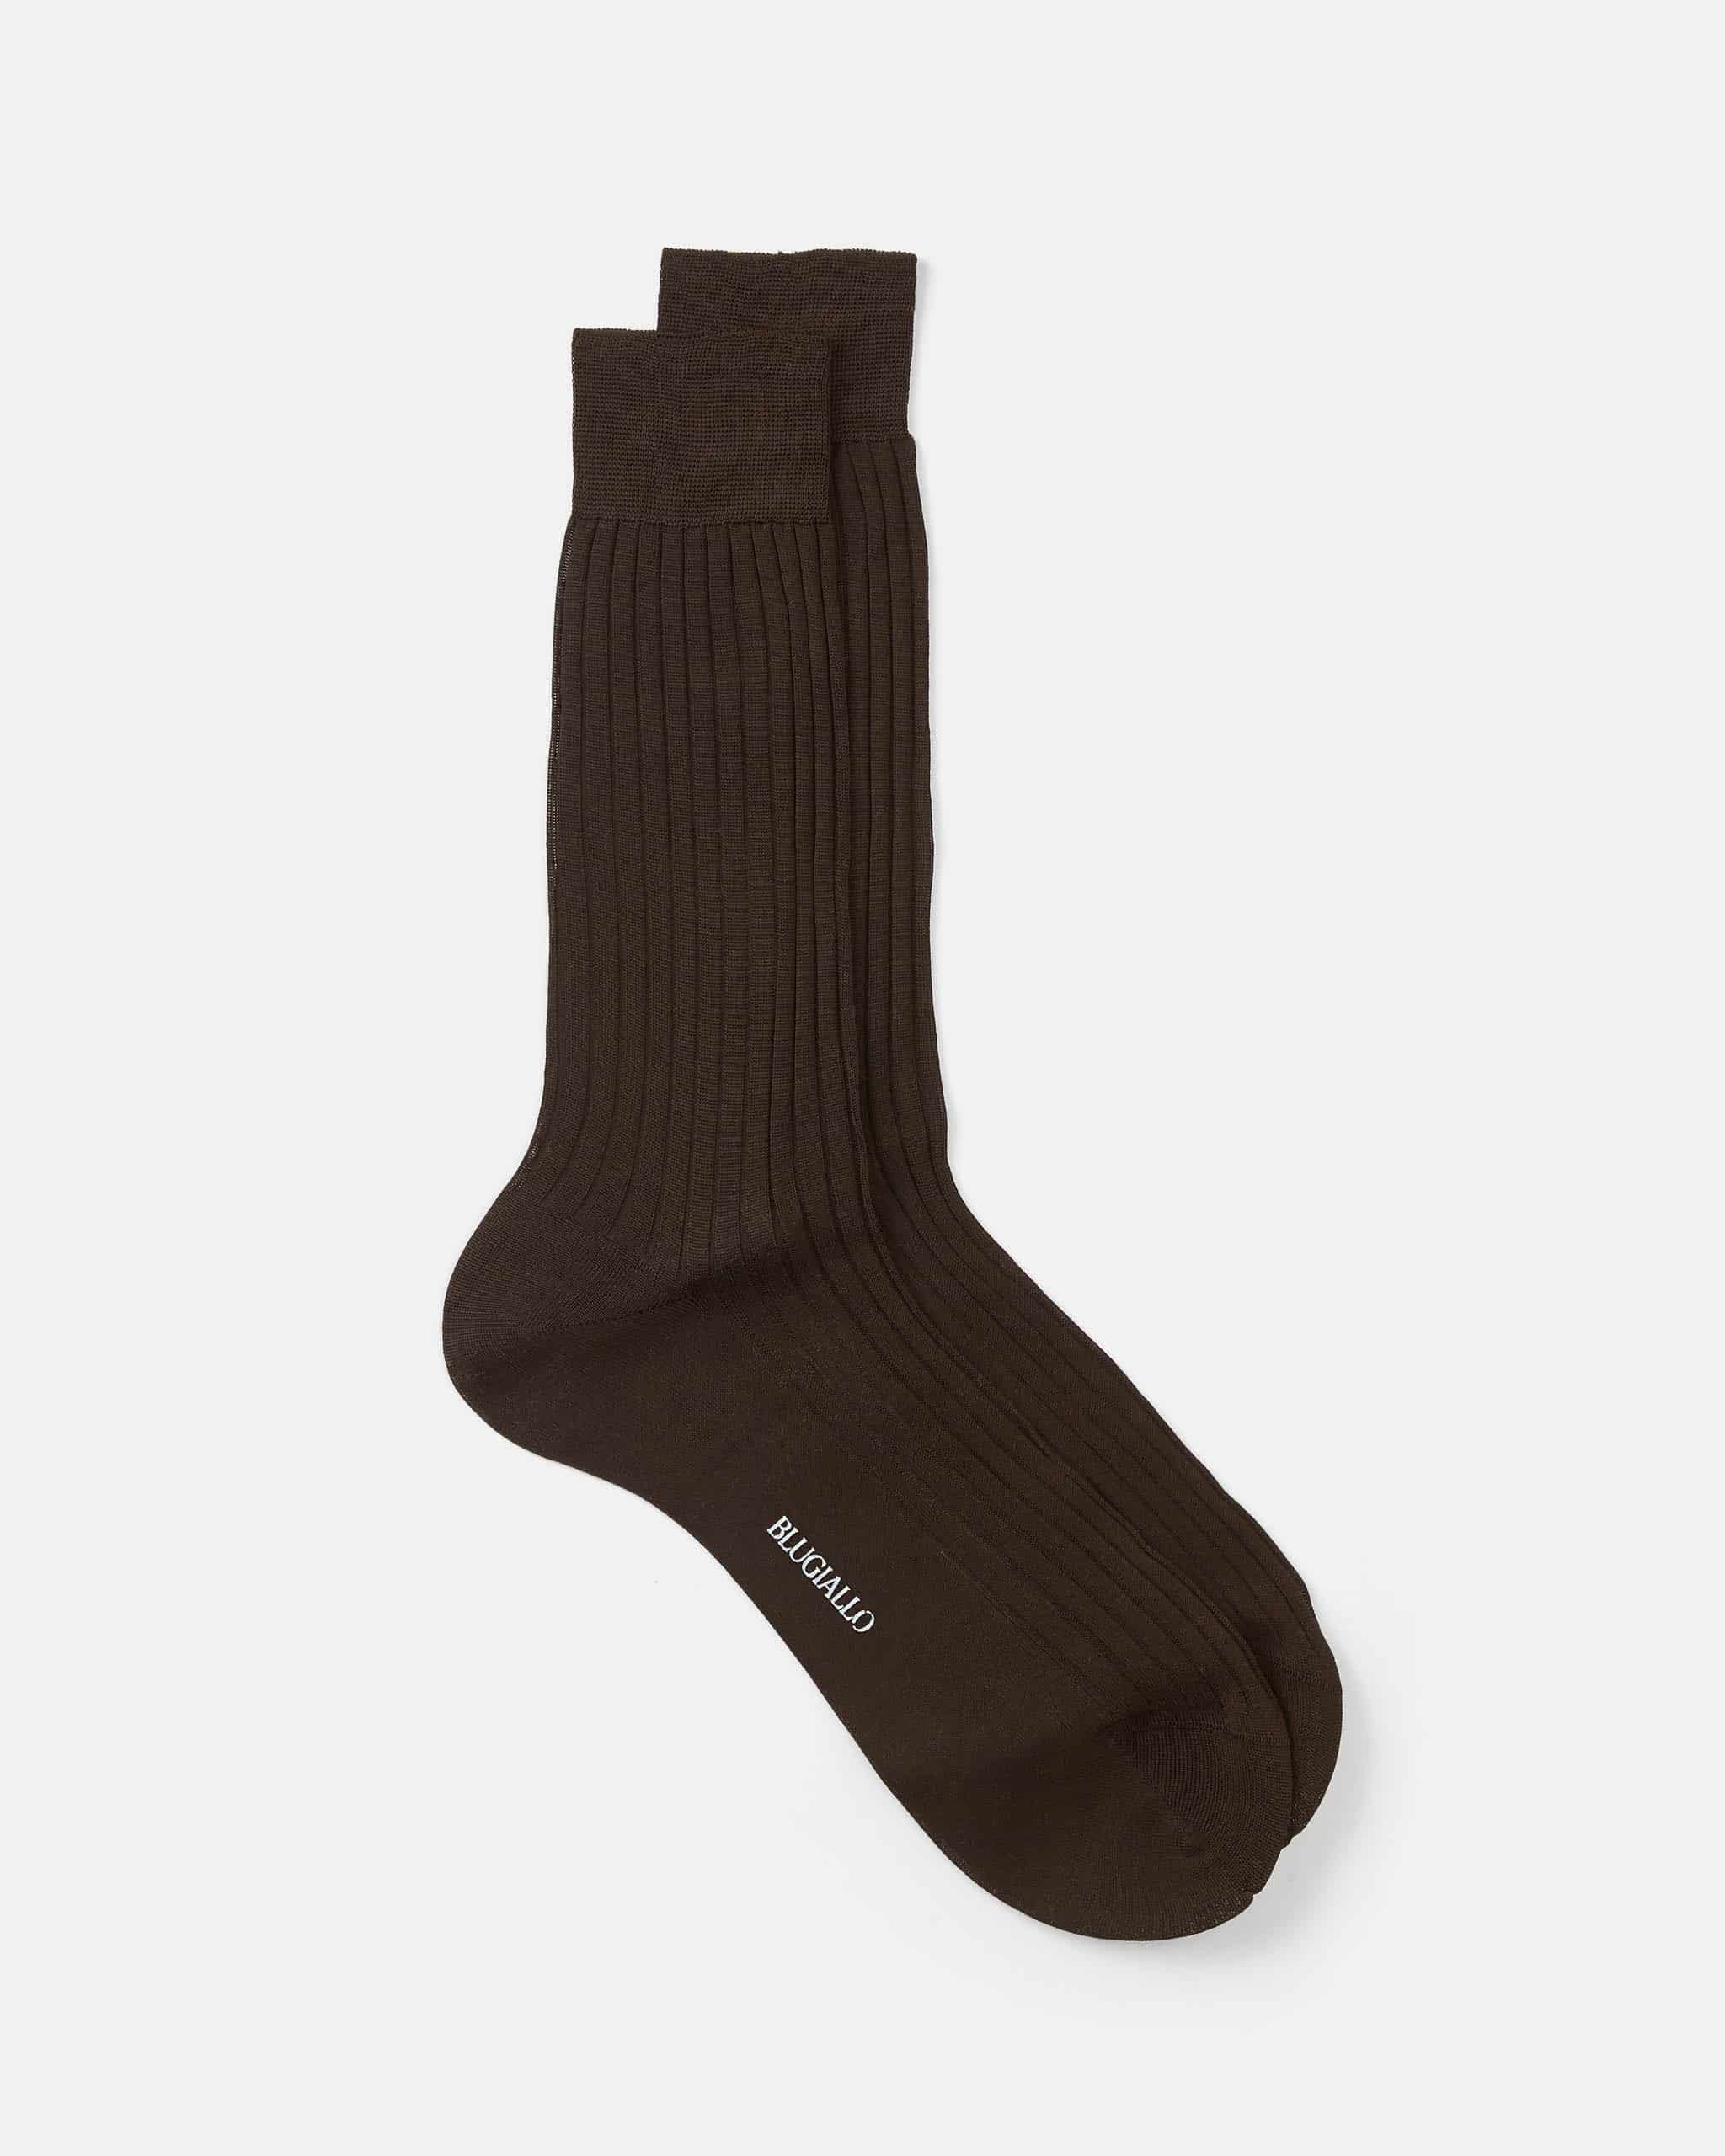 Merino wool socks coffee brown image 1